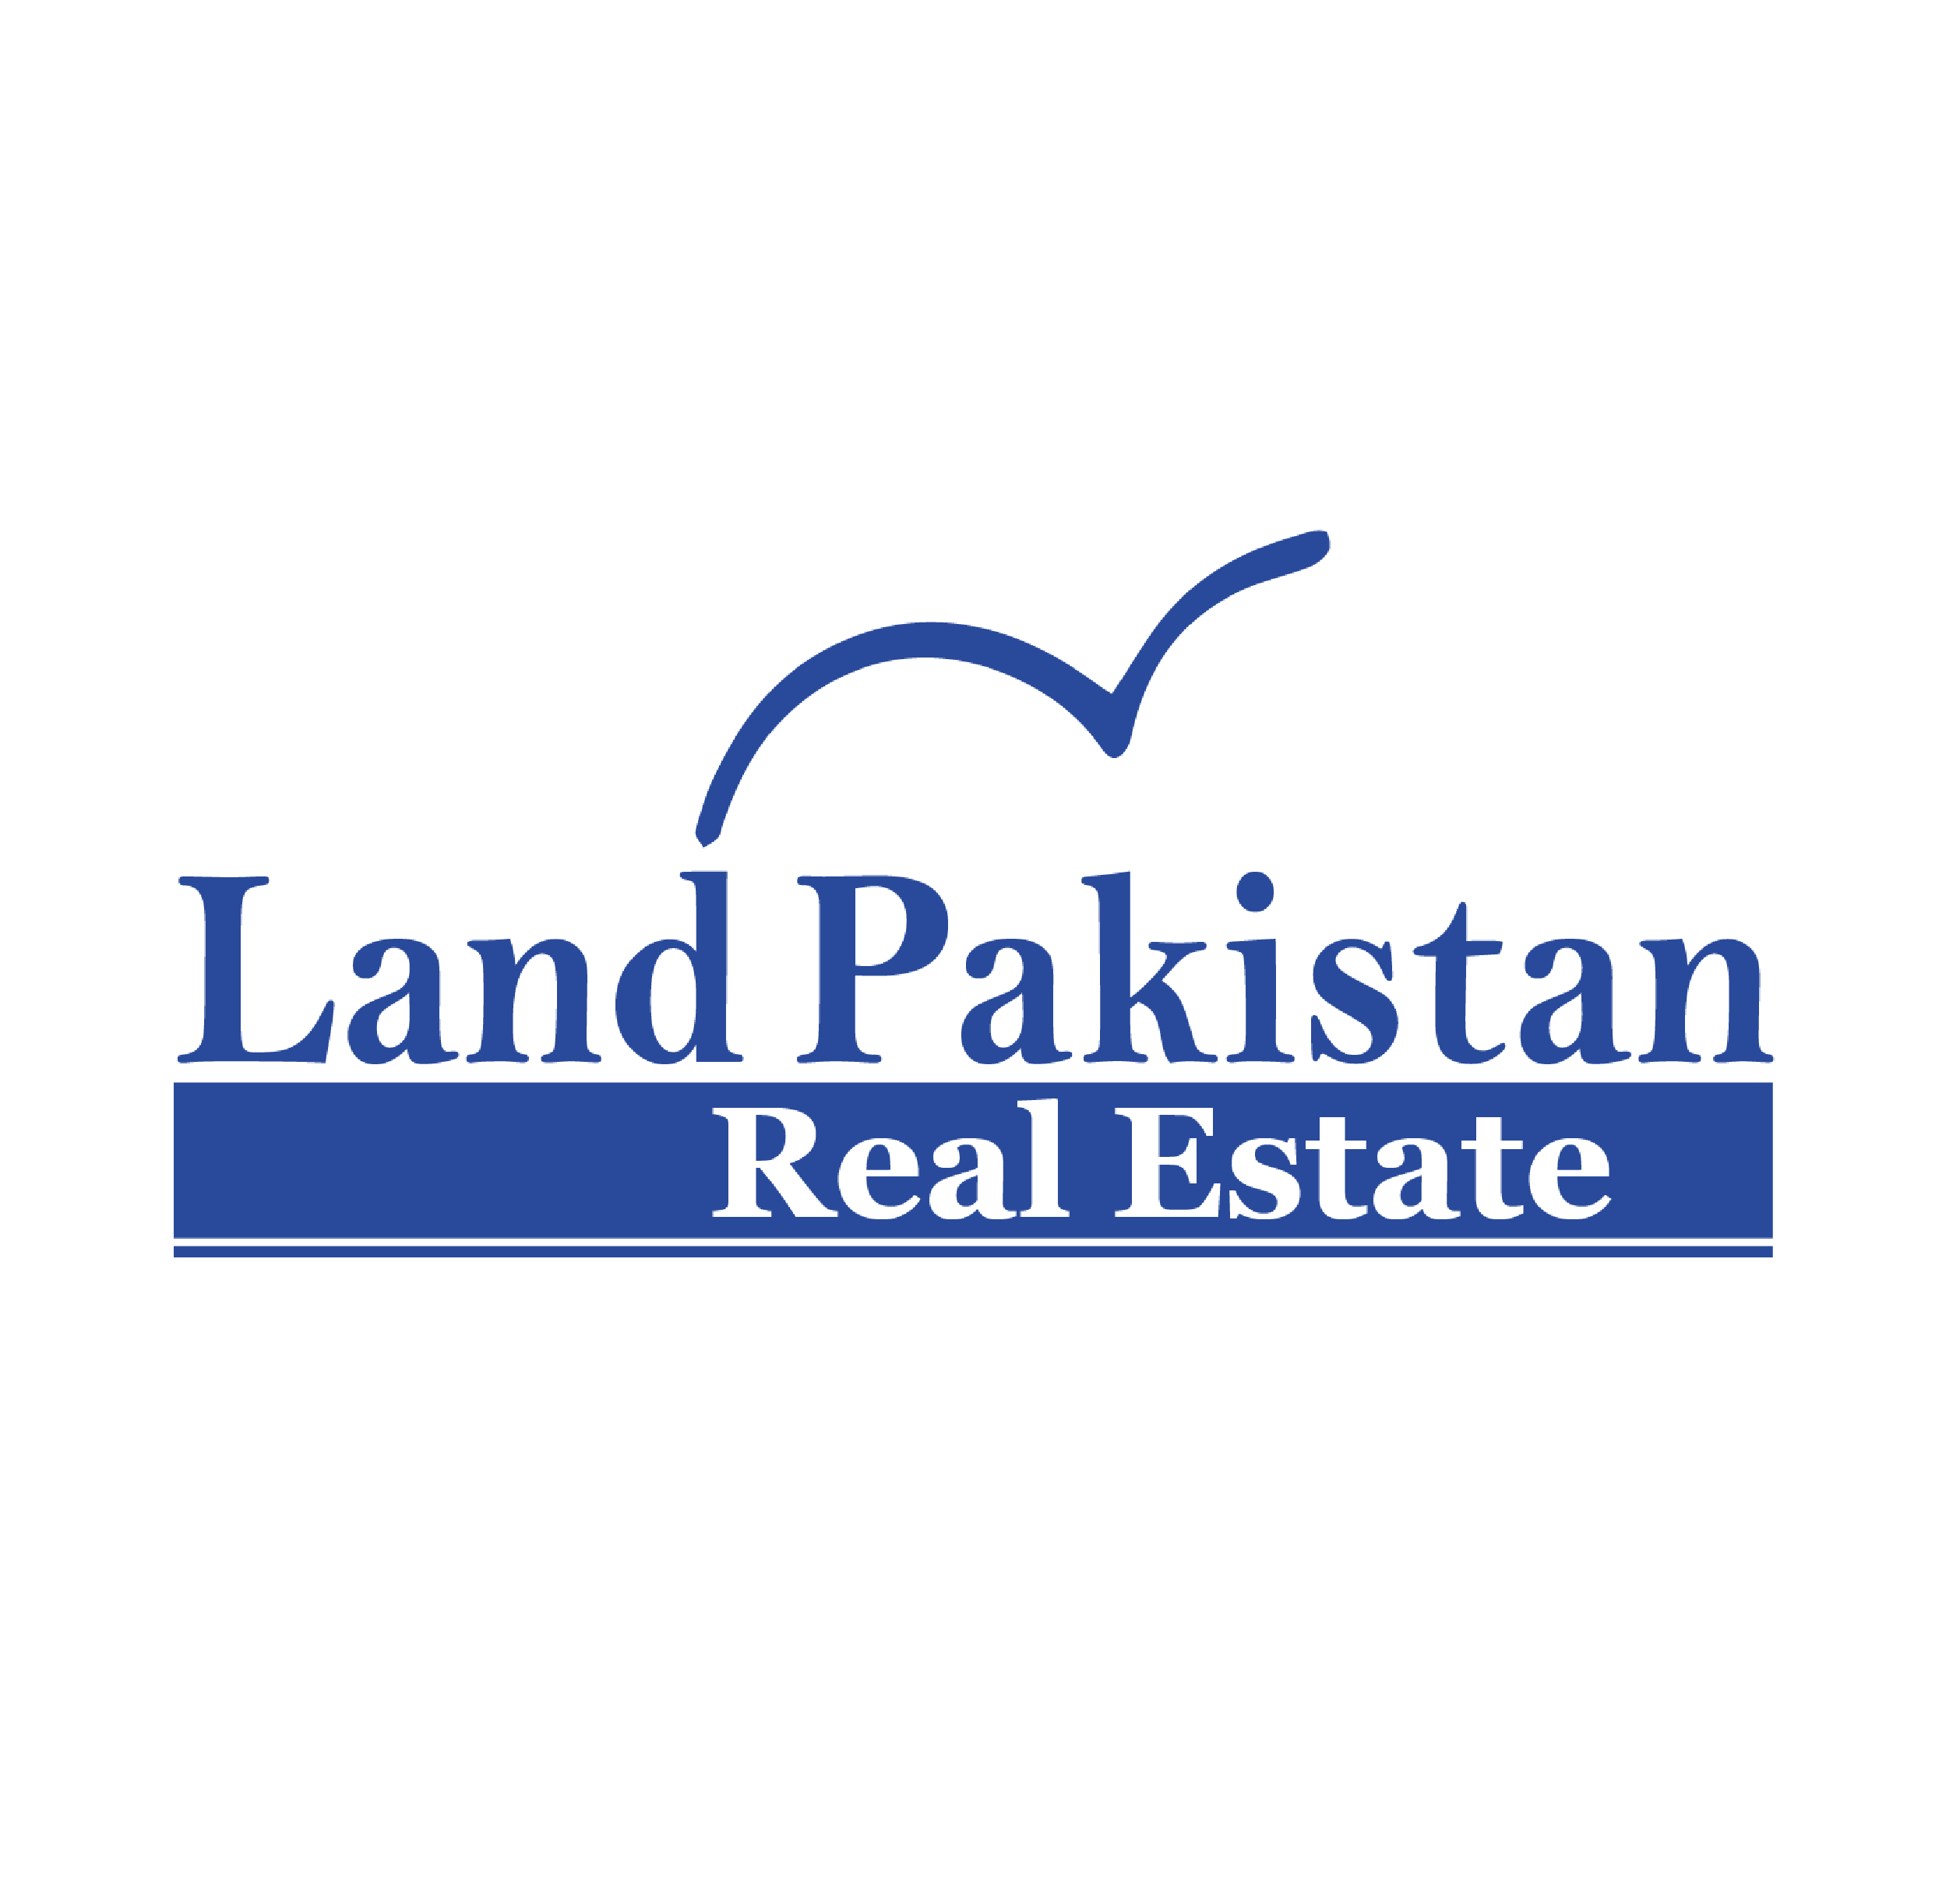 Land Pakistan Real Estate